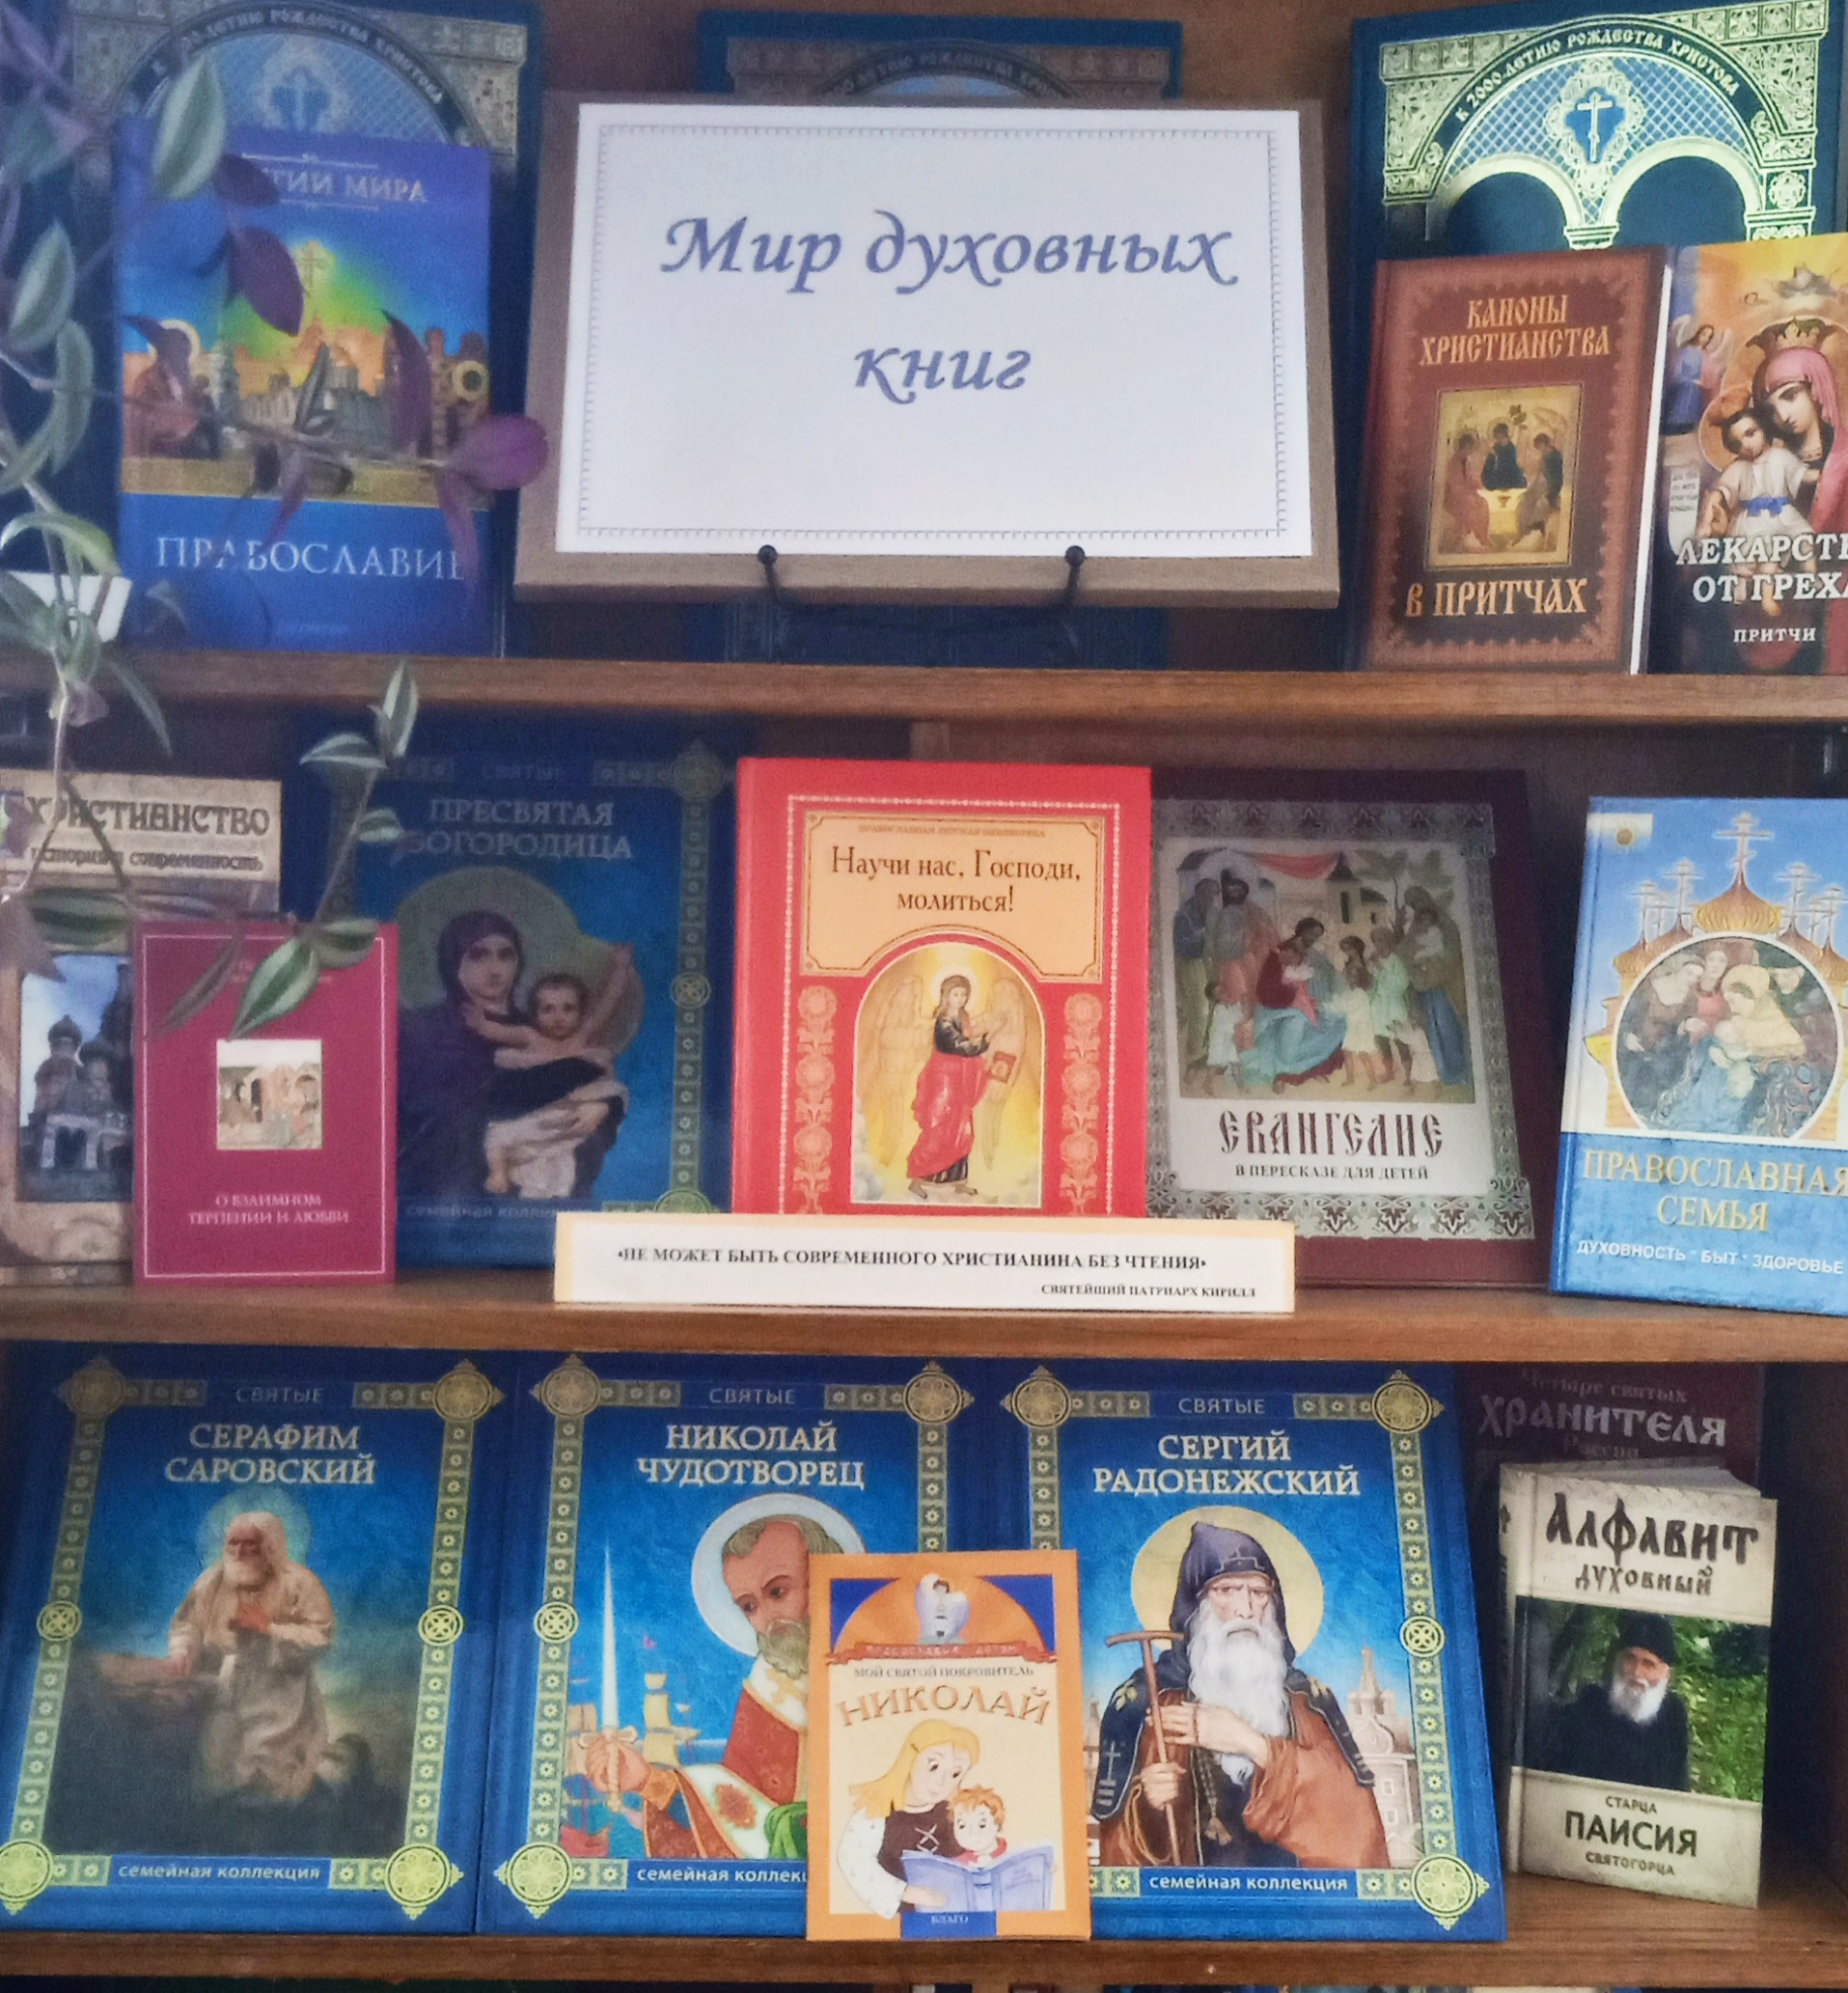 Книжная выставка «Мир духовных книг» (6+)